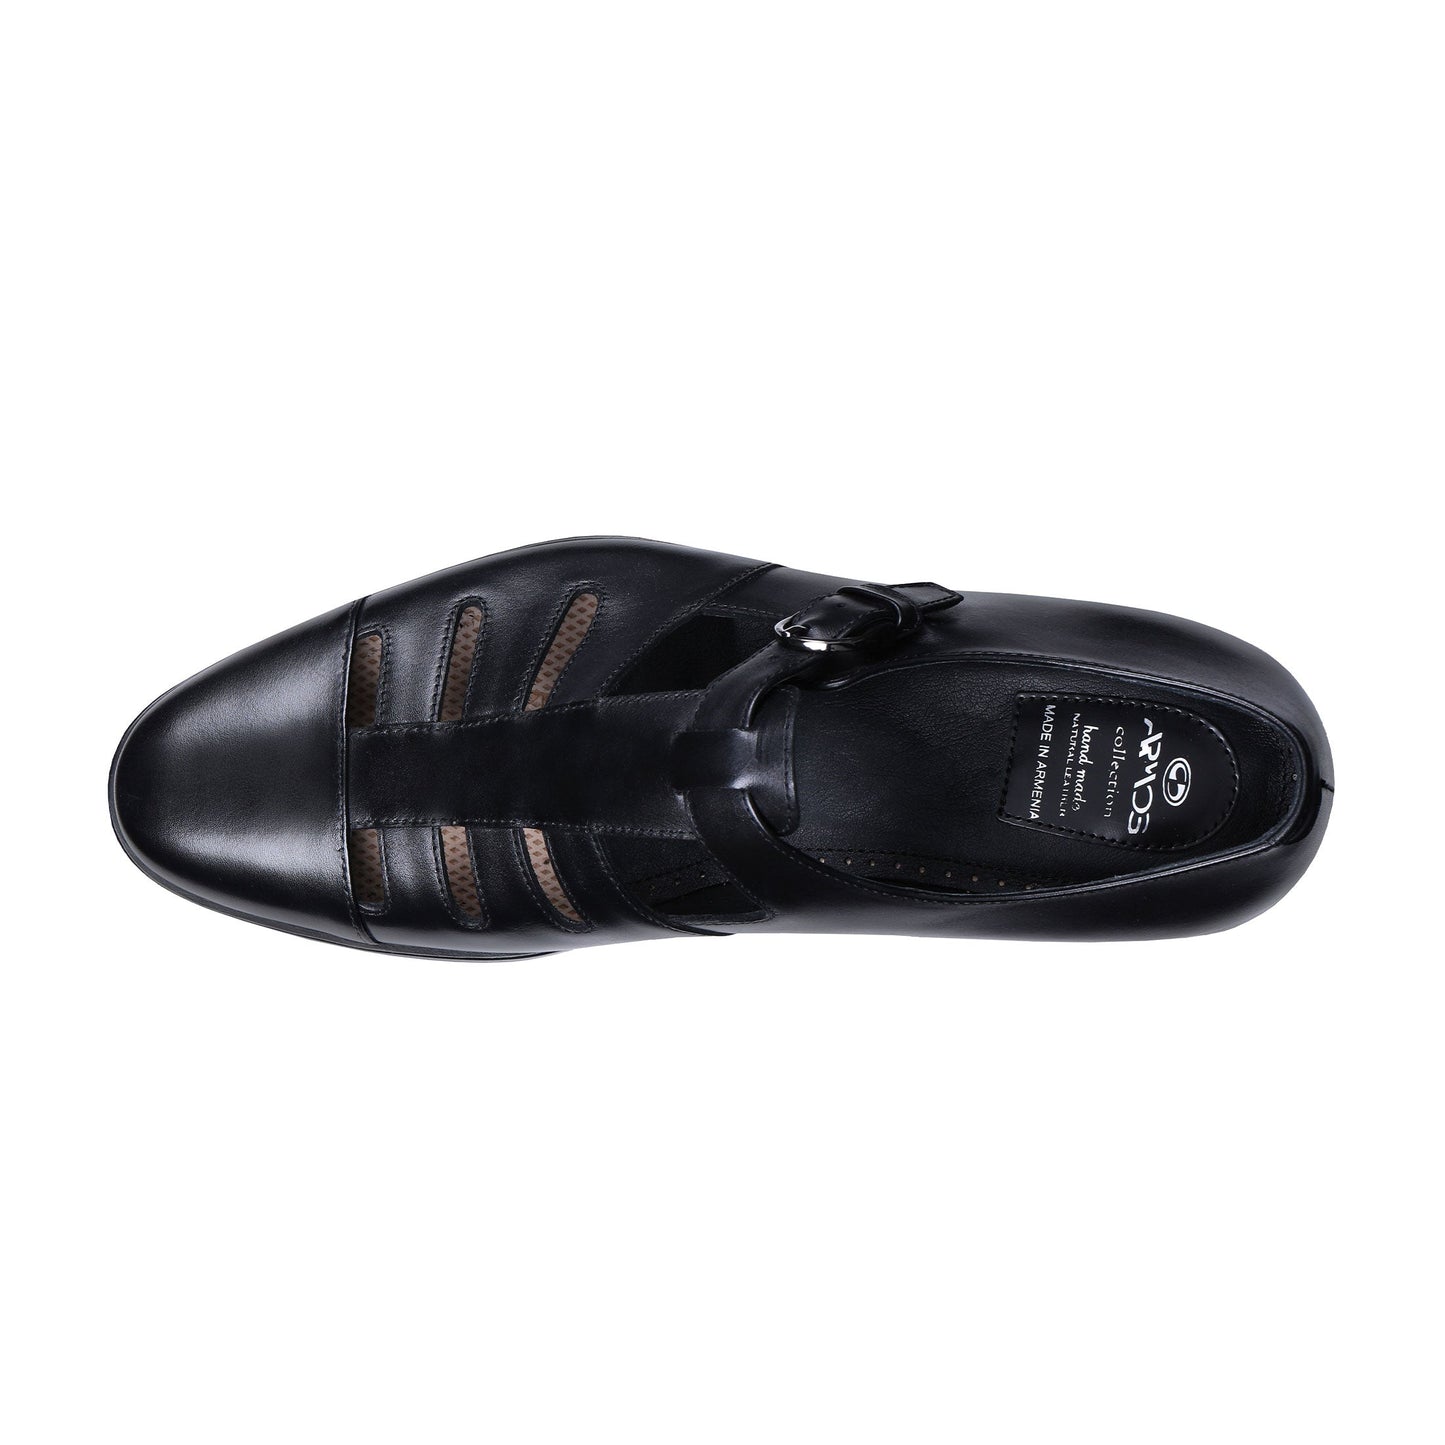 Black classic sandals